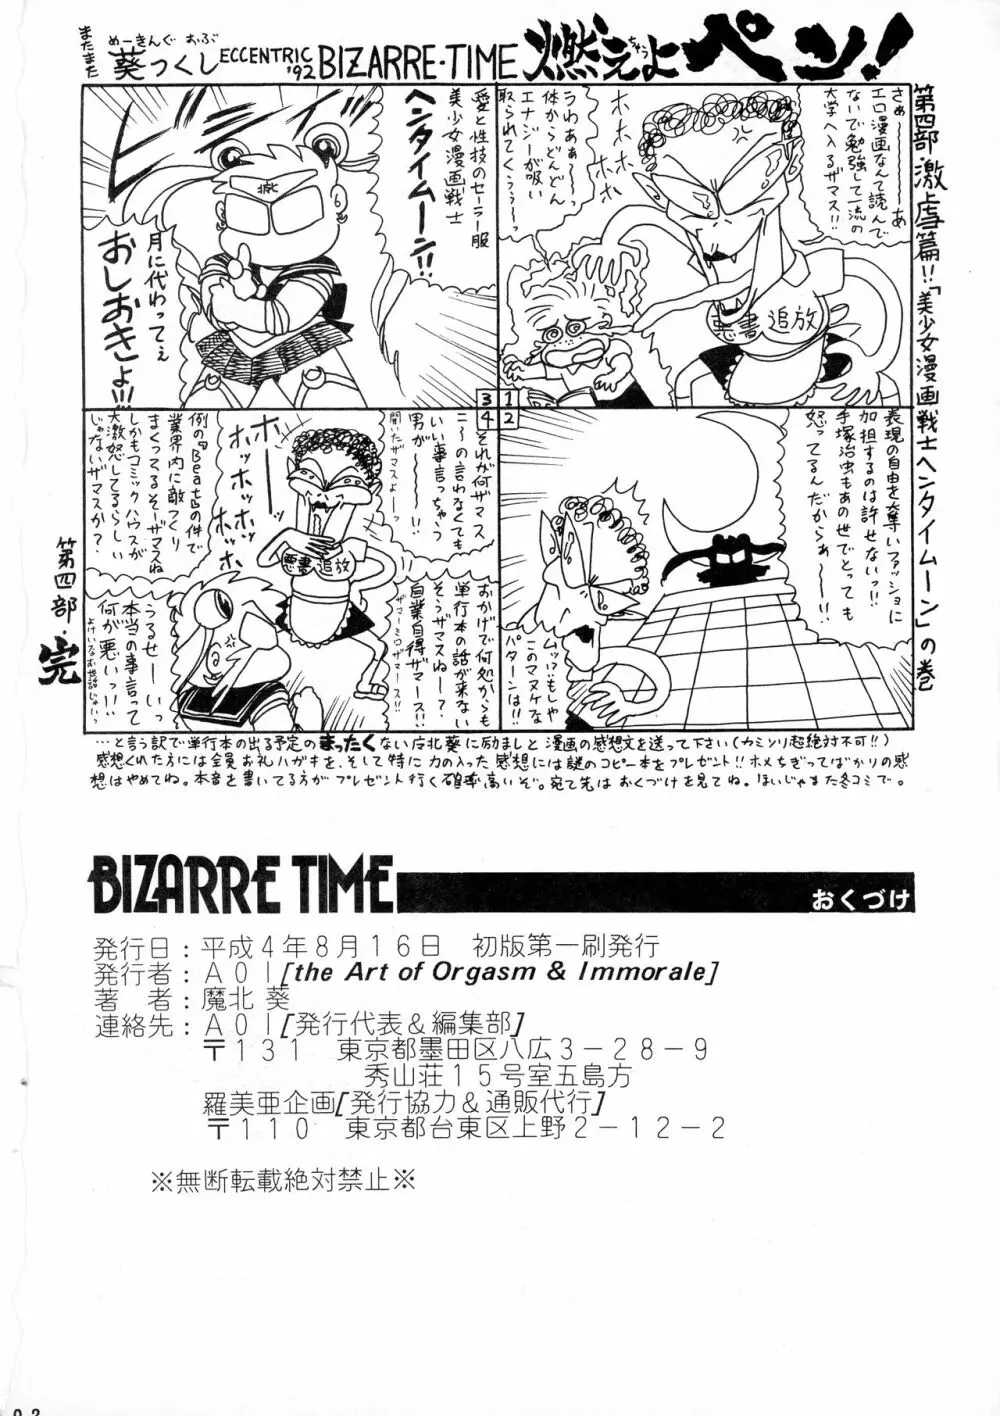 葵つくしEmergency 92 BIZARRE TIME 102ページ